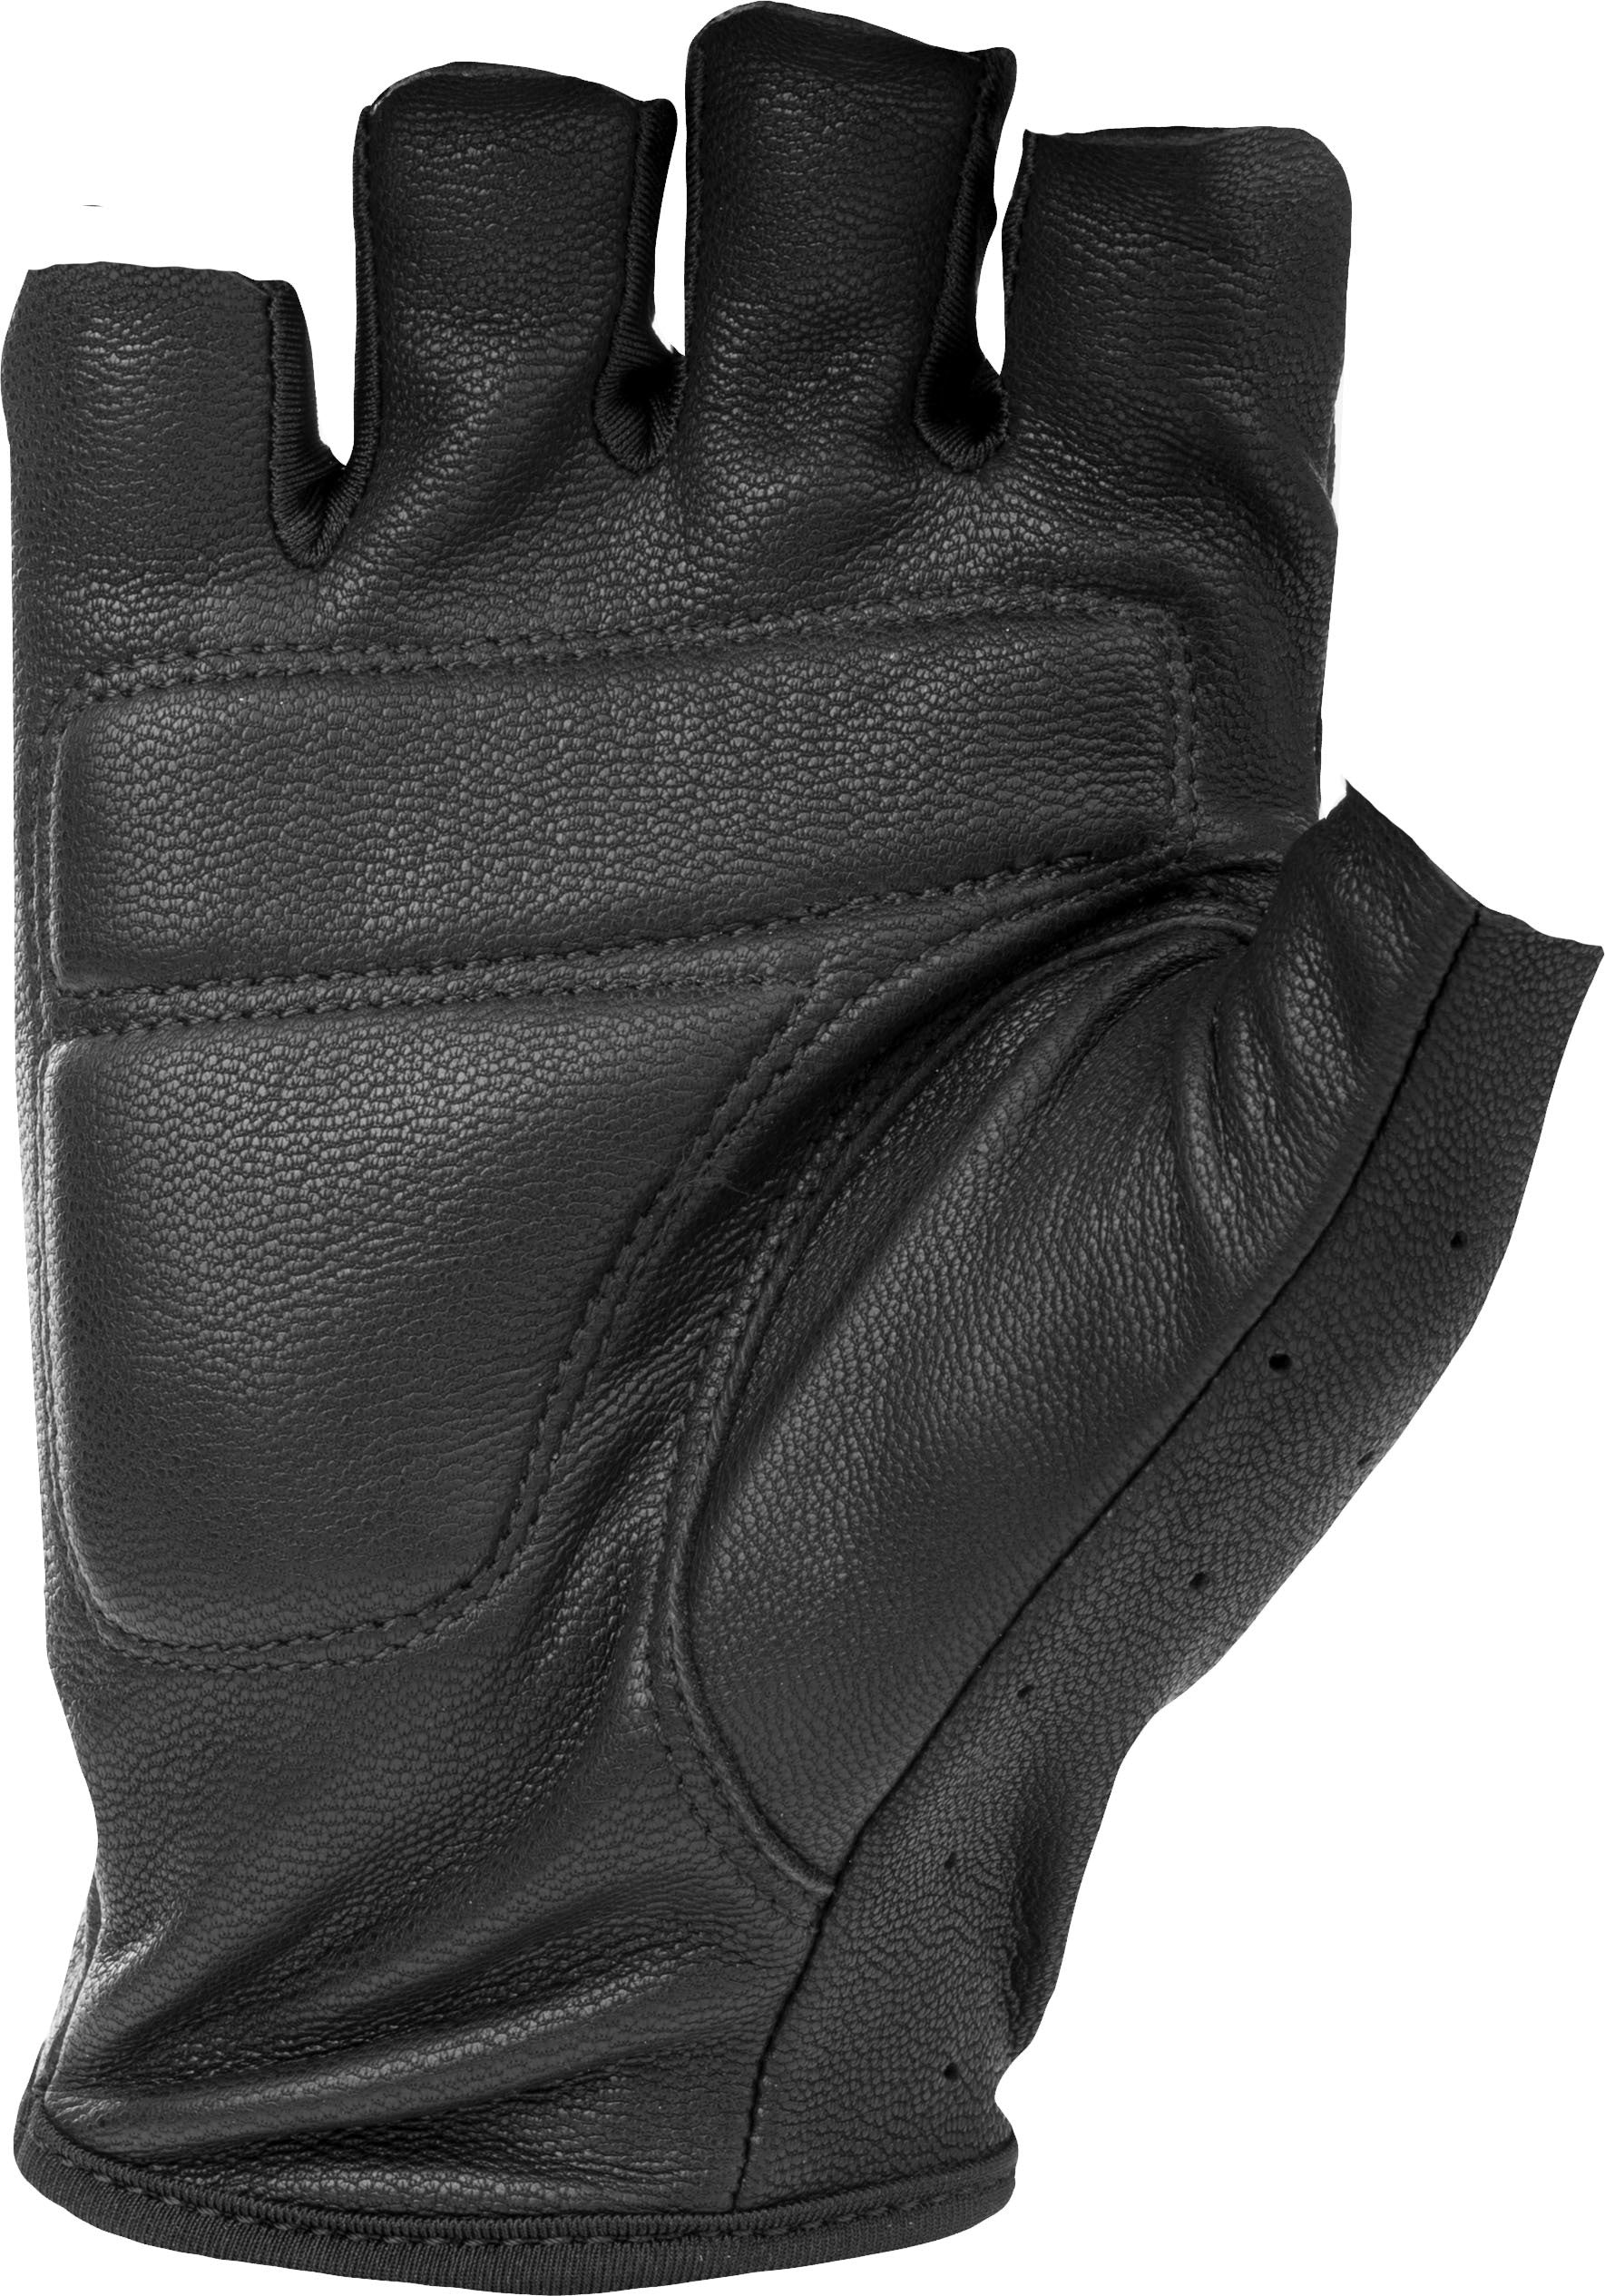 Ranger Gloves Black Lg